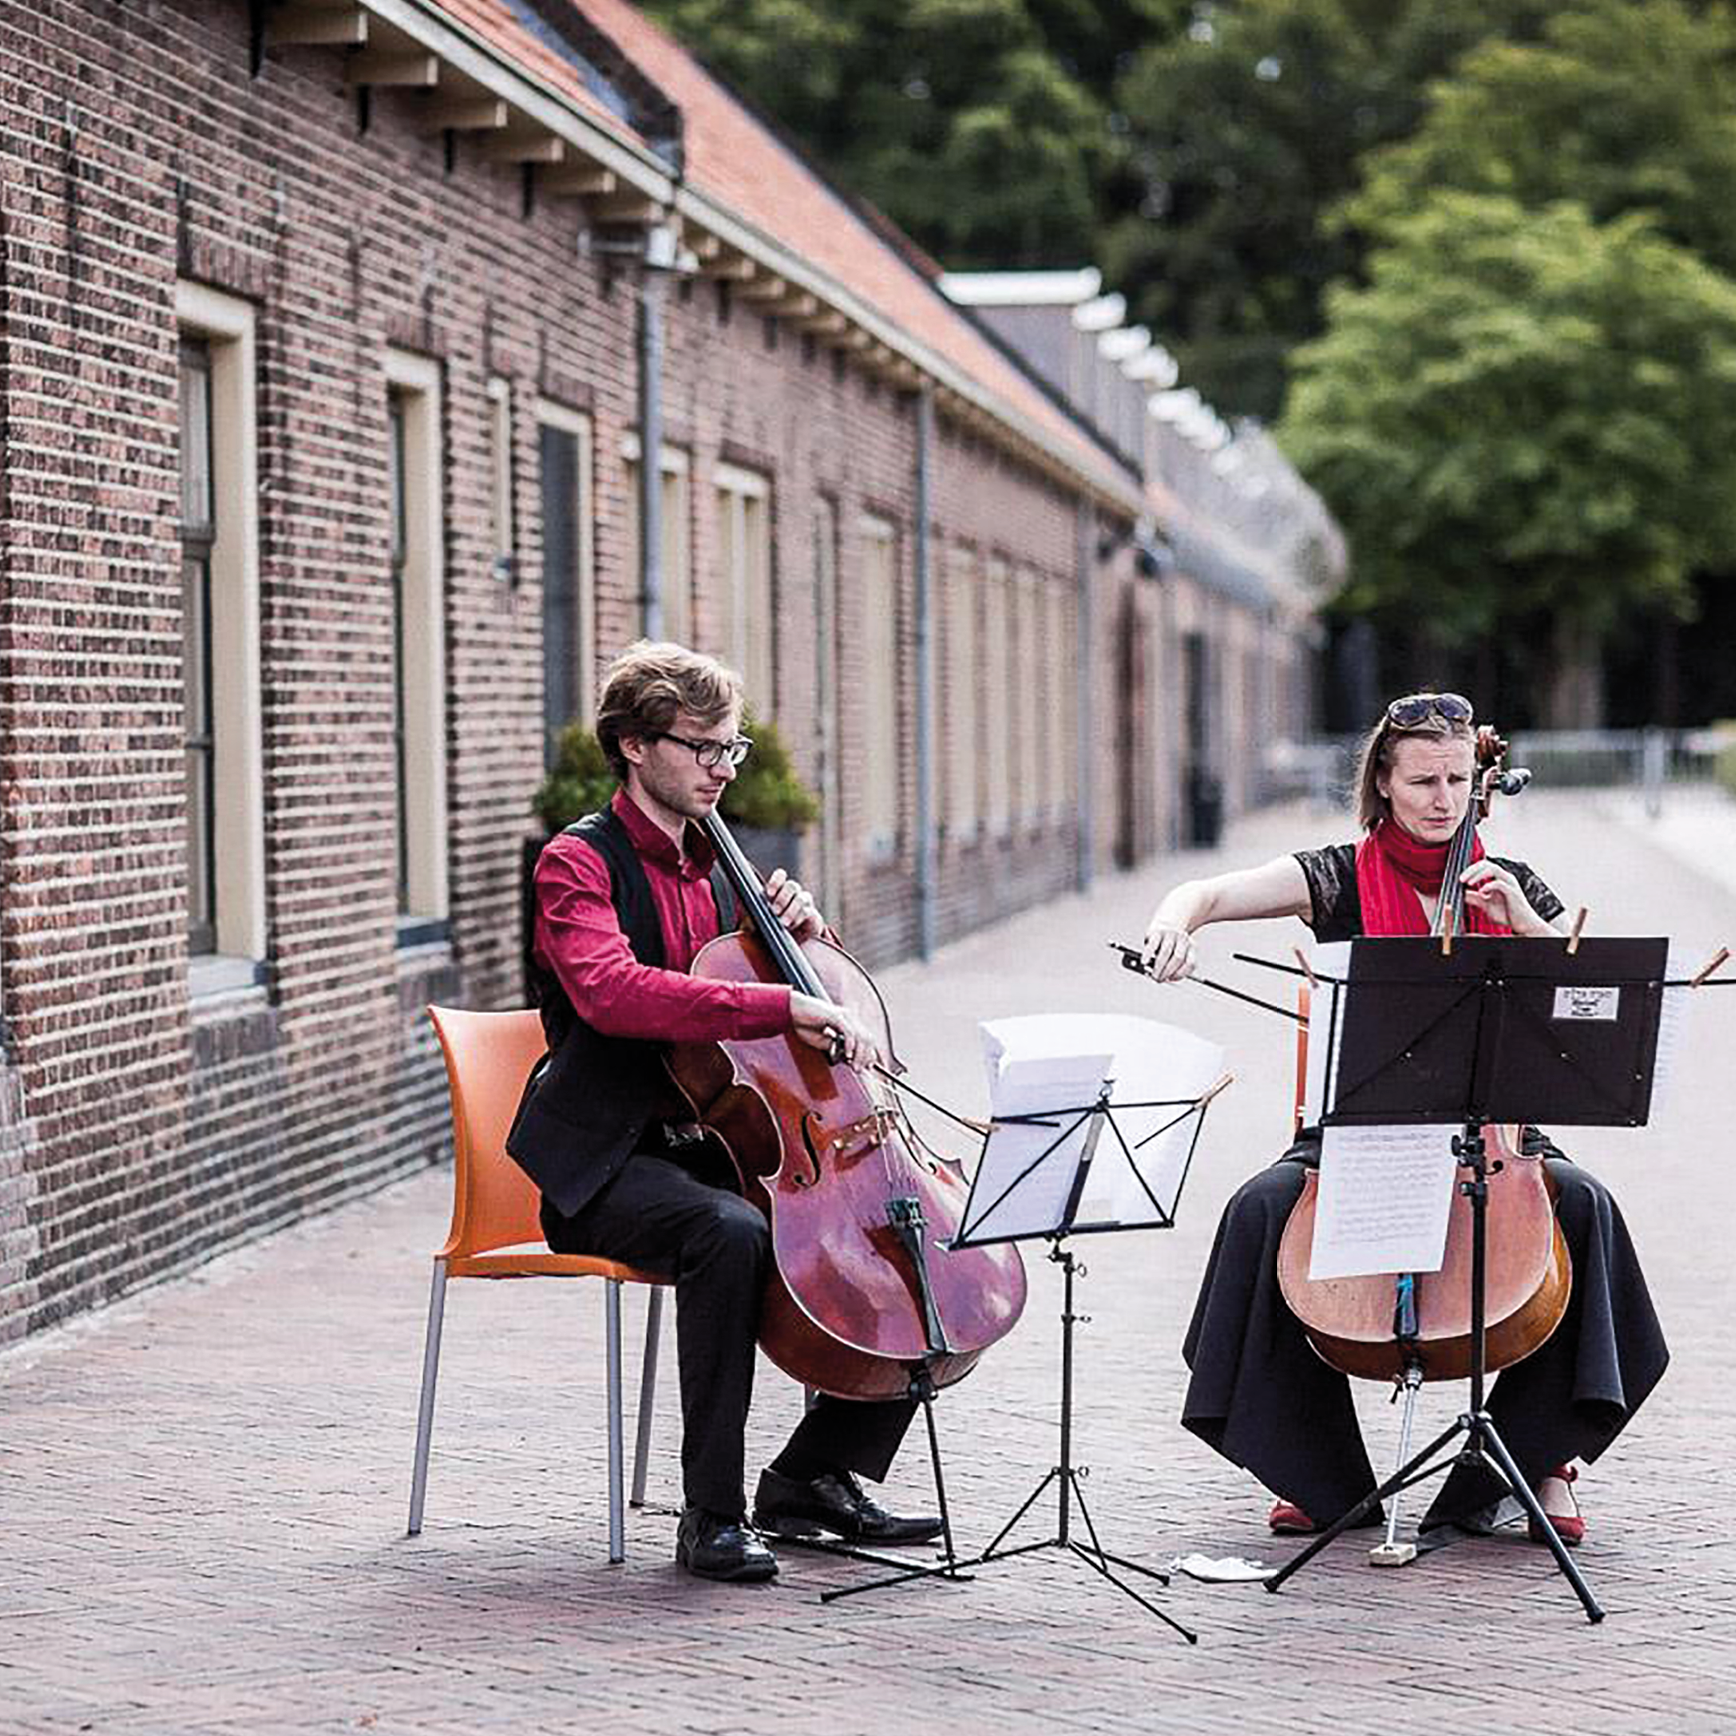 Festival Veenhuizen Drenthe Klassieke muziek